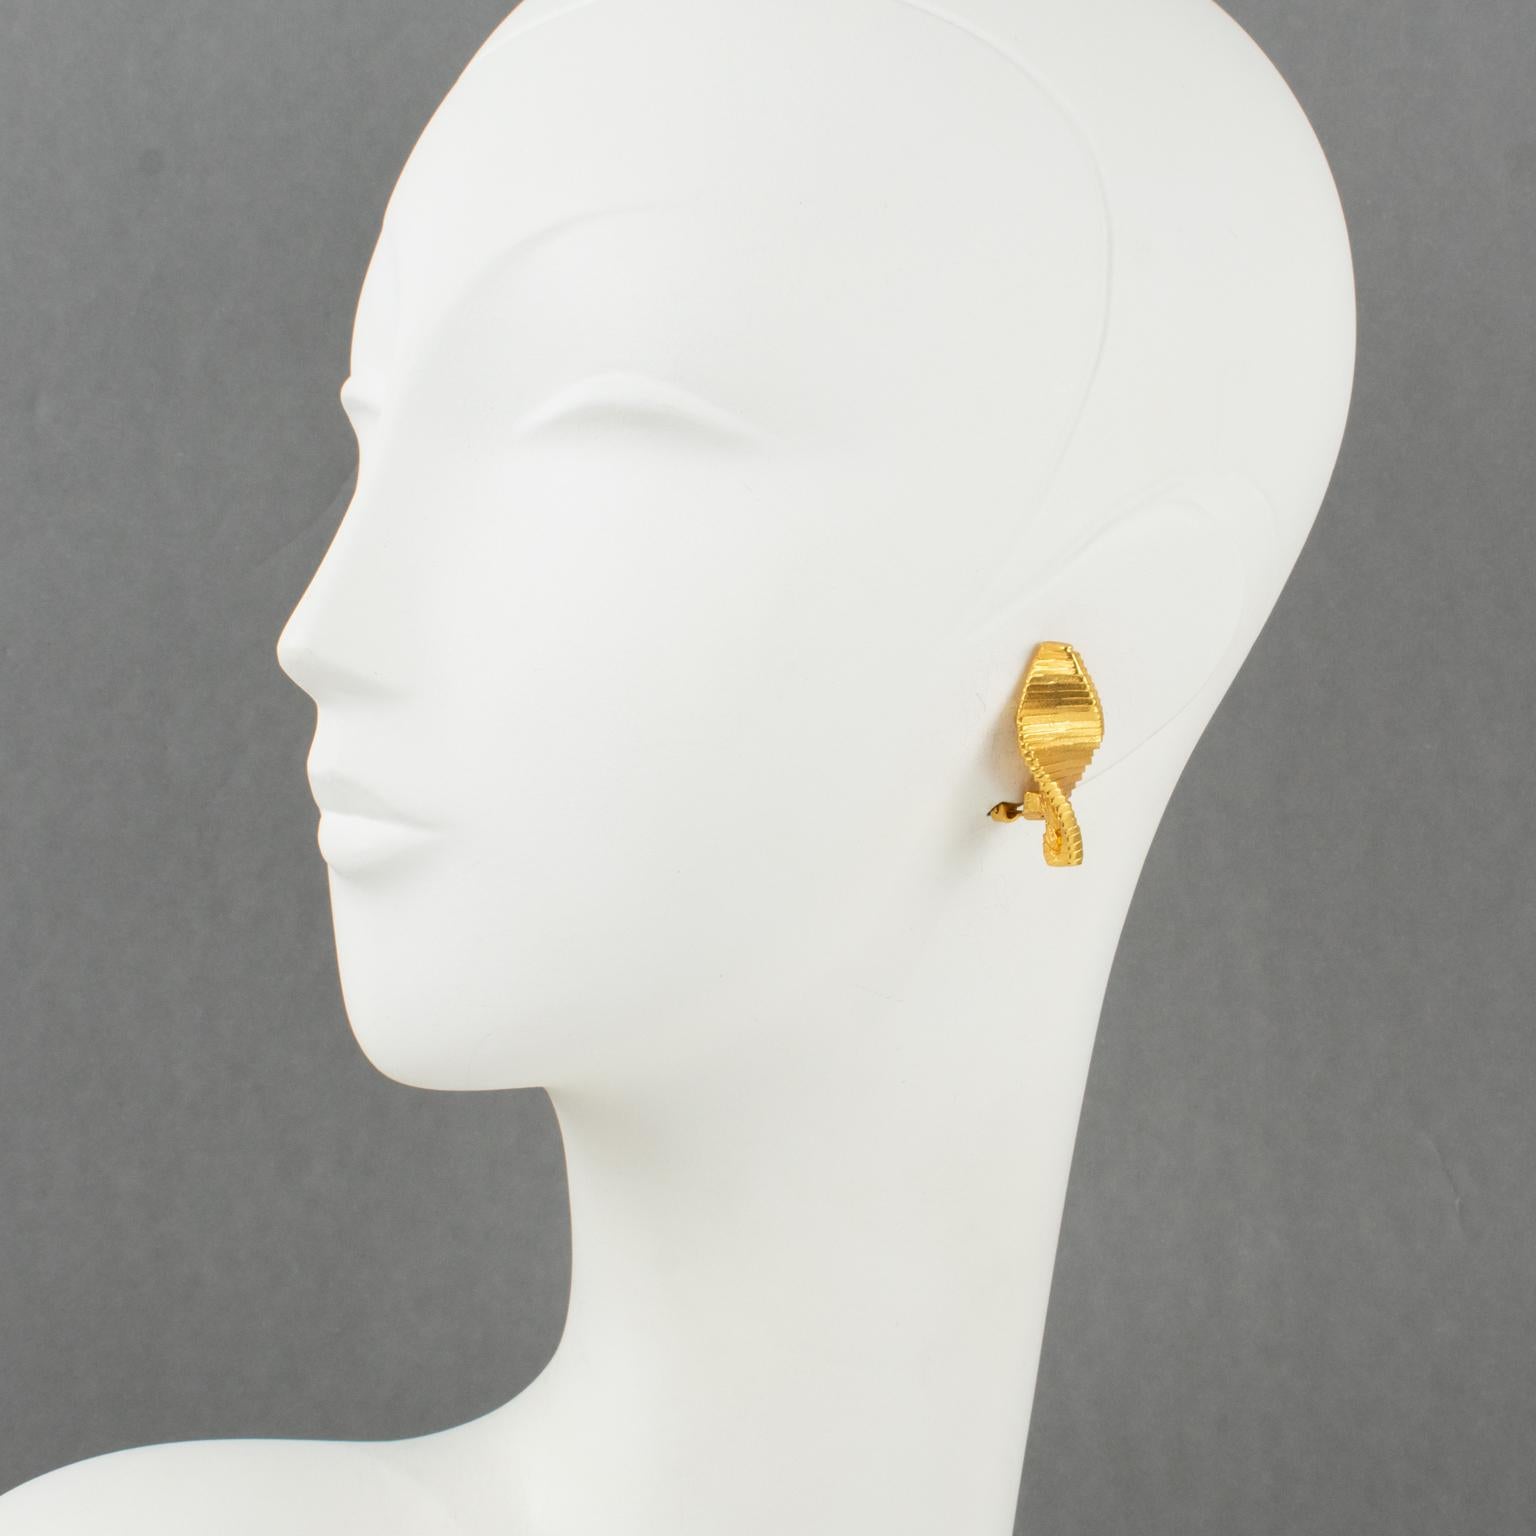 Diese hübschen, modernistischen, geometrischen Ohrringe zum Anstecken wurden von Claude Montana entworfen und zeichnen sich durch ein futuristisches dreidimensionales, vergoldetes Metall aus, das mit einem satinierten Finish und einem geschnitzten